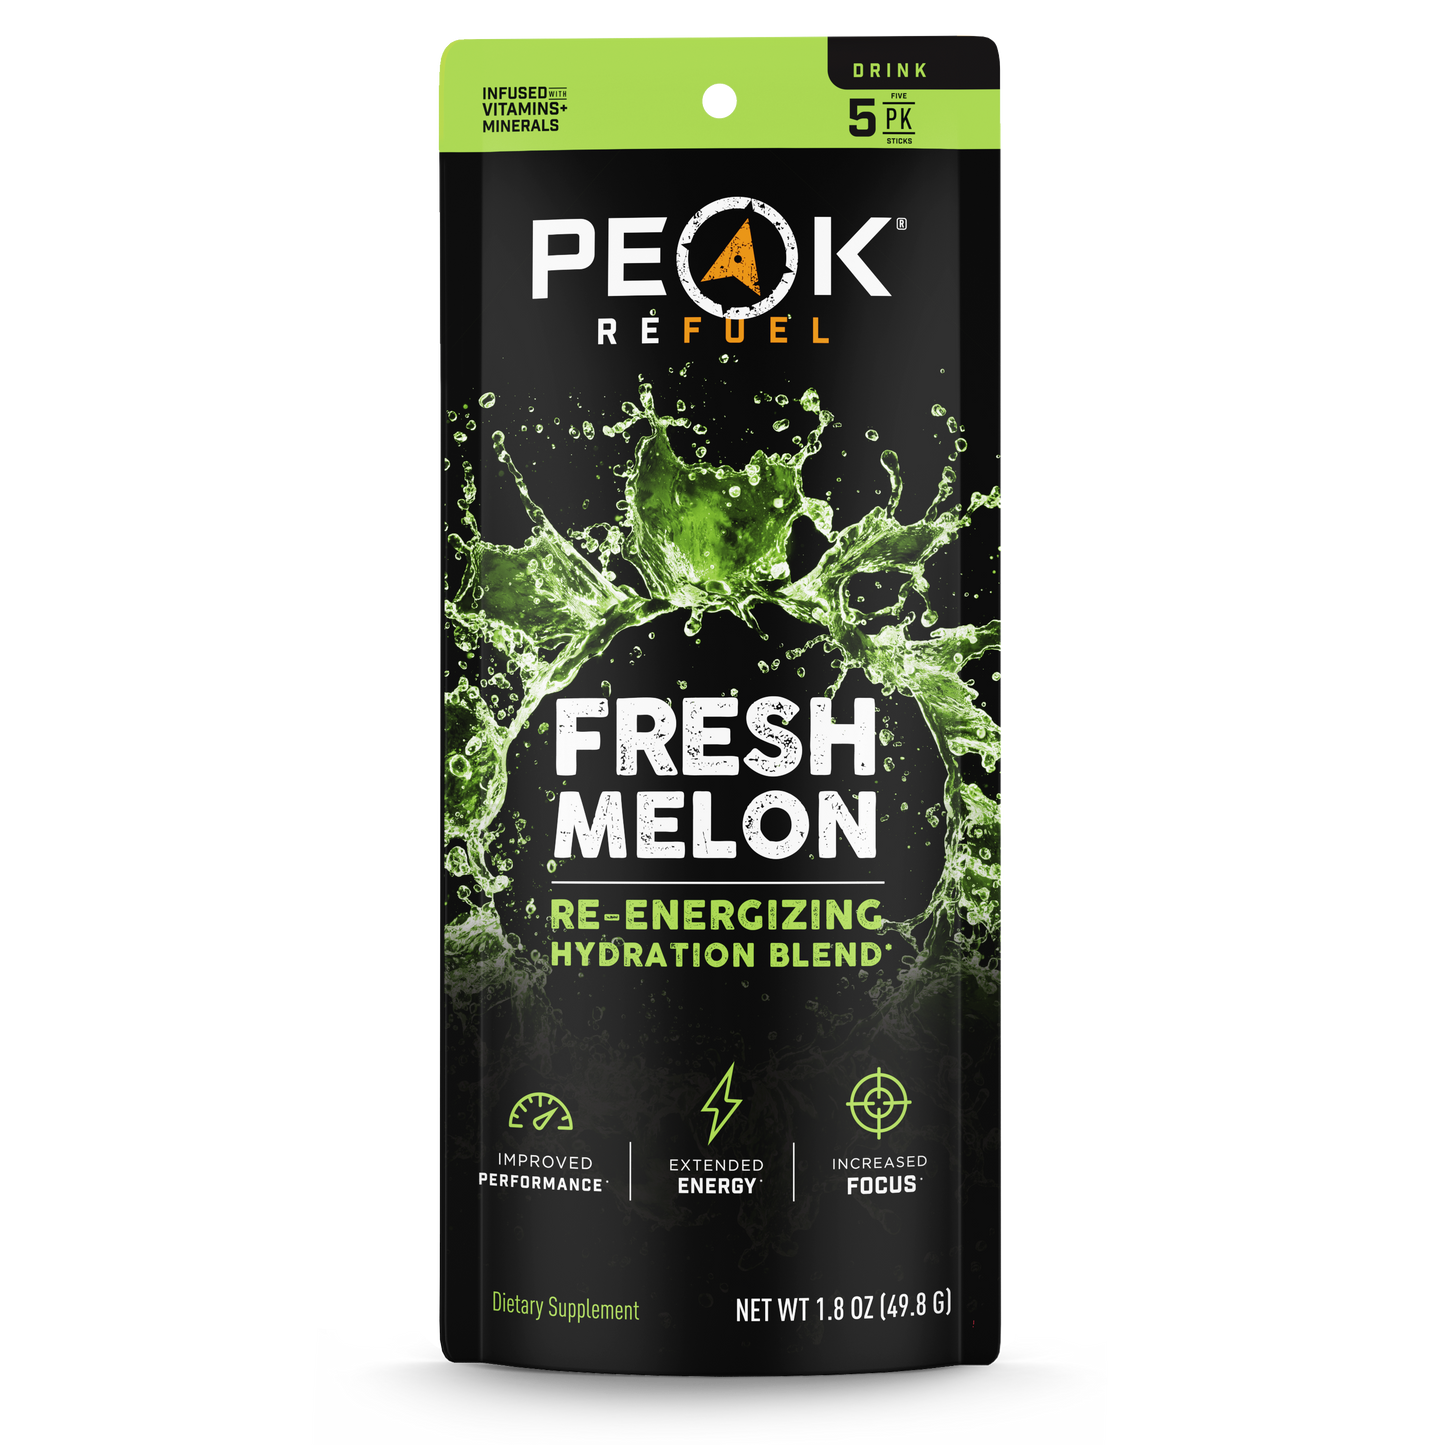 Drink Variety Pack by Peak Refuel